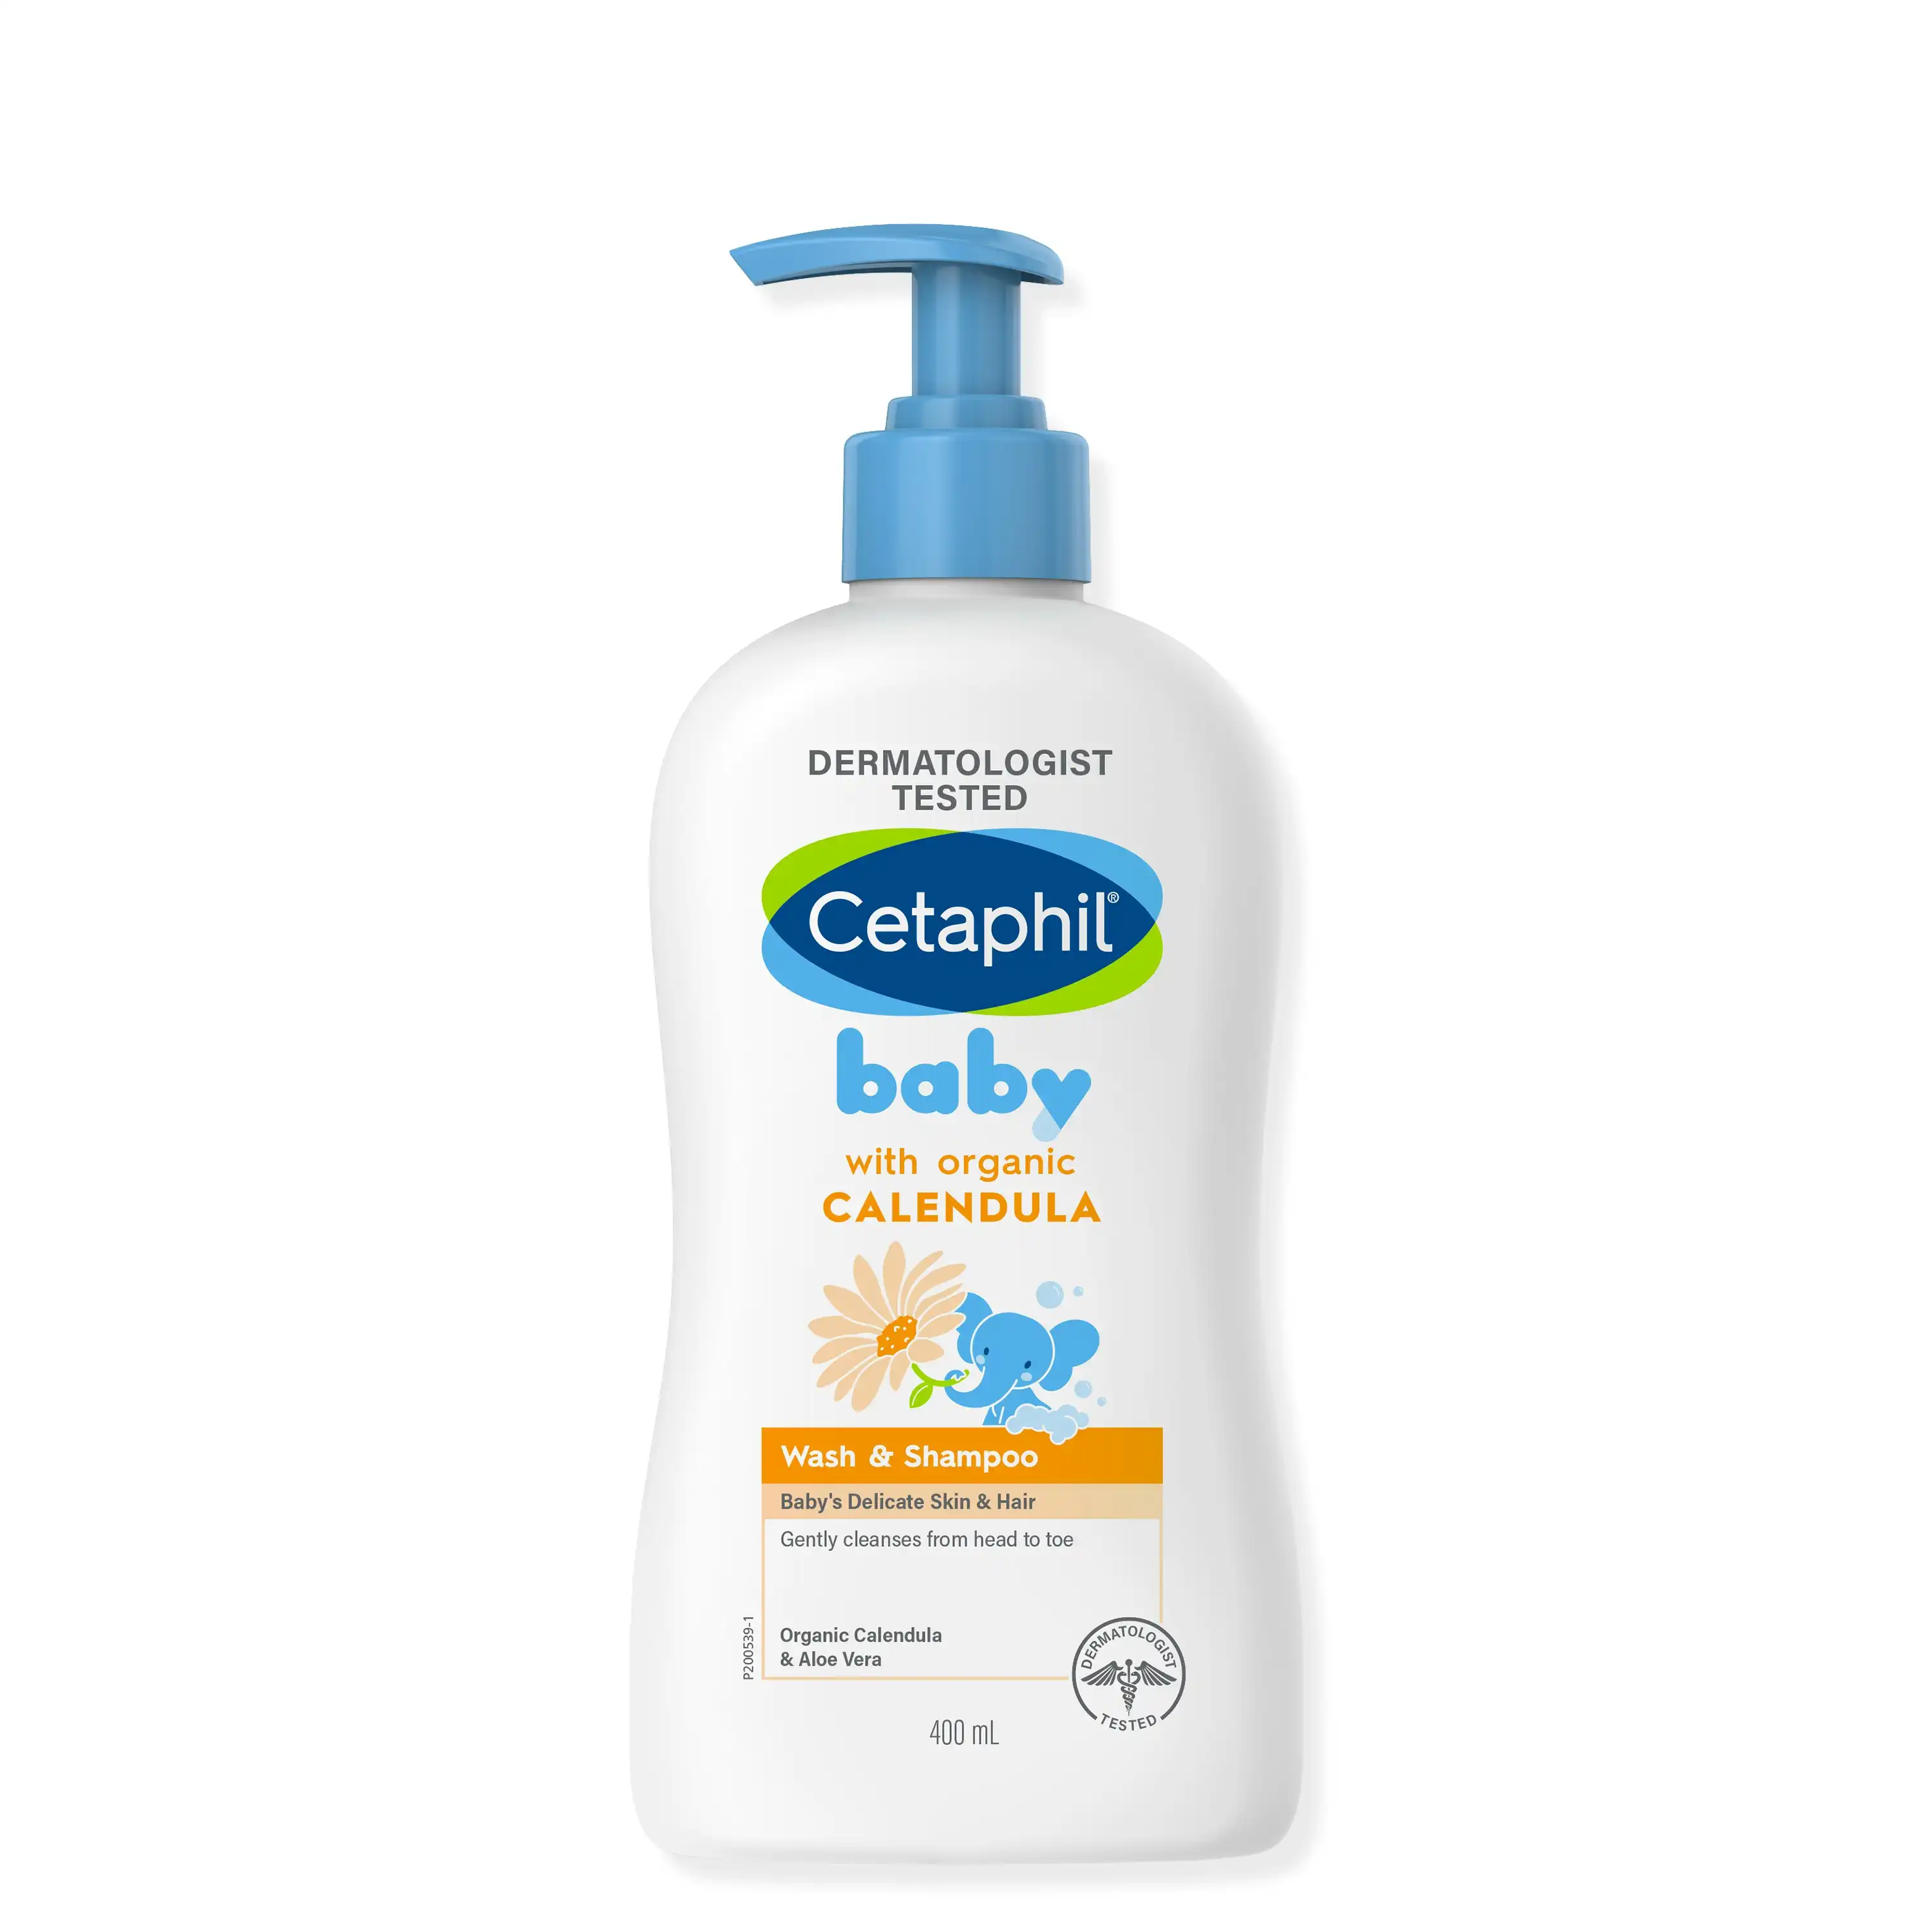 Cetaphil Baby Calendula Wash Shampoo 400ml